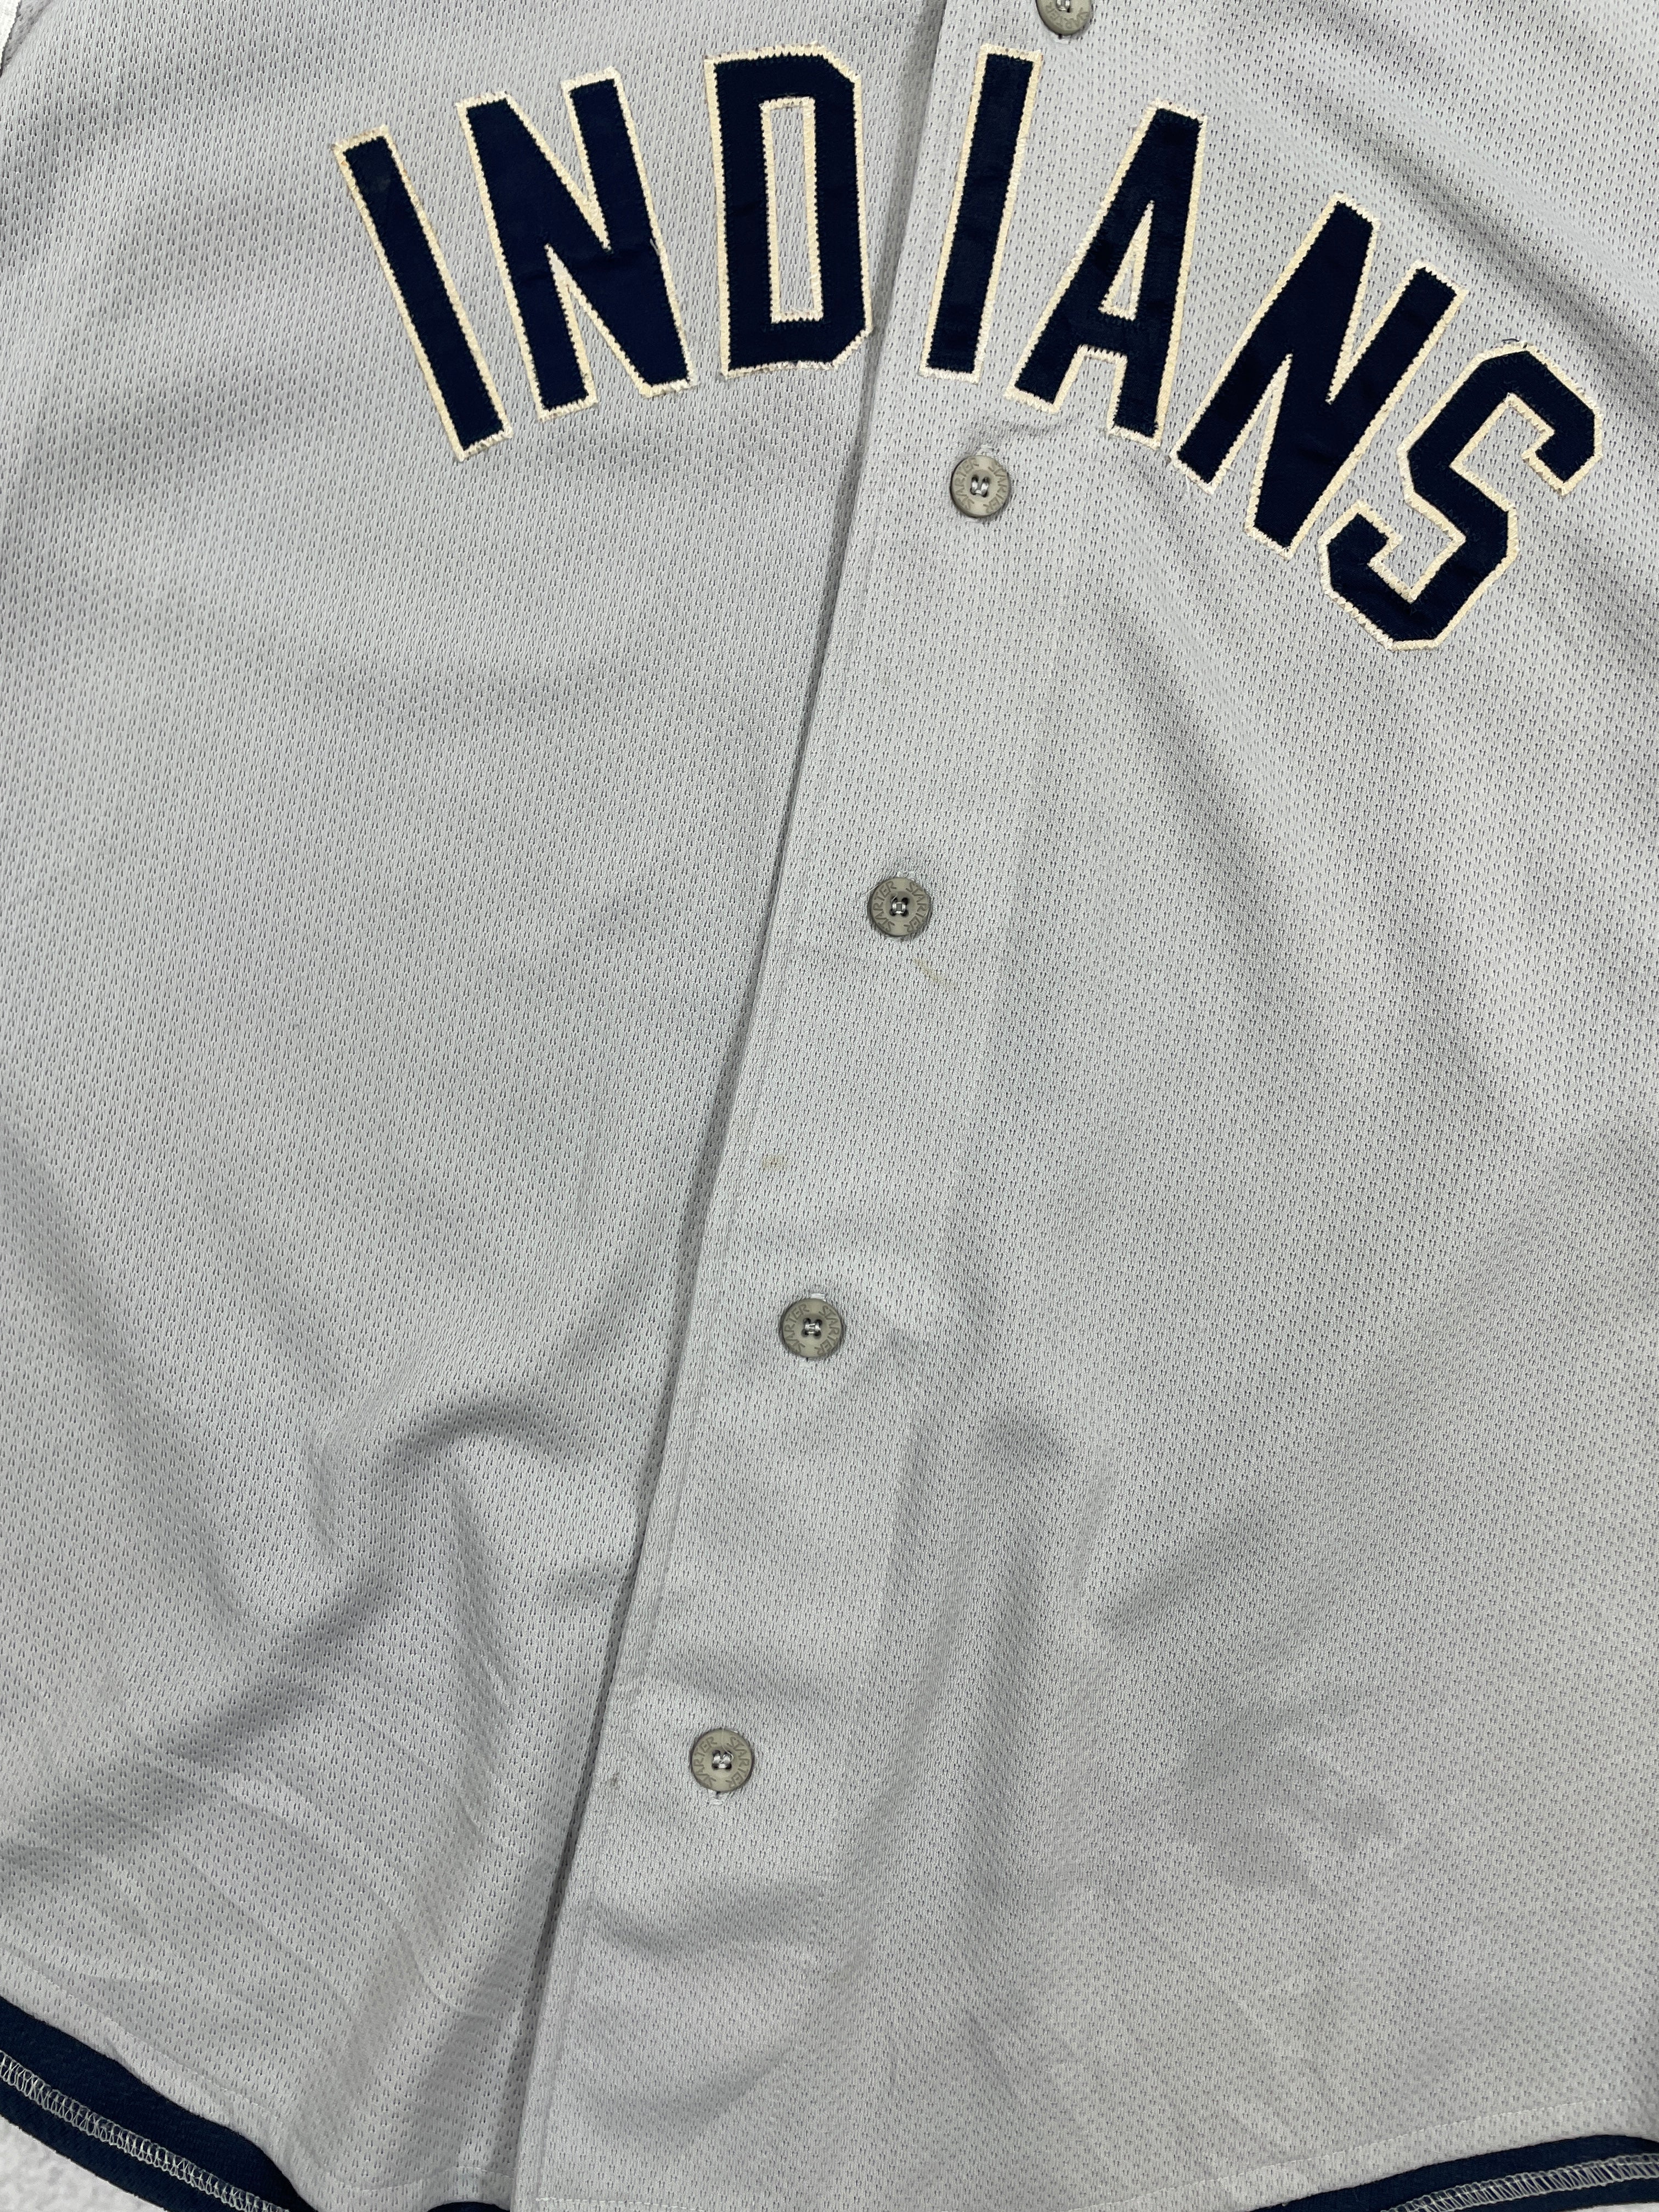 Vintage MLB Cleveland Indians Jersey - Men's XL